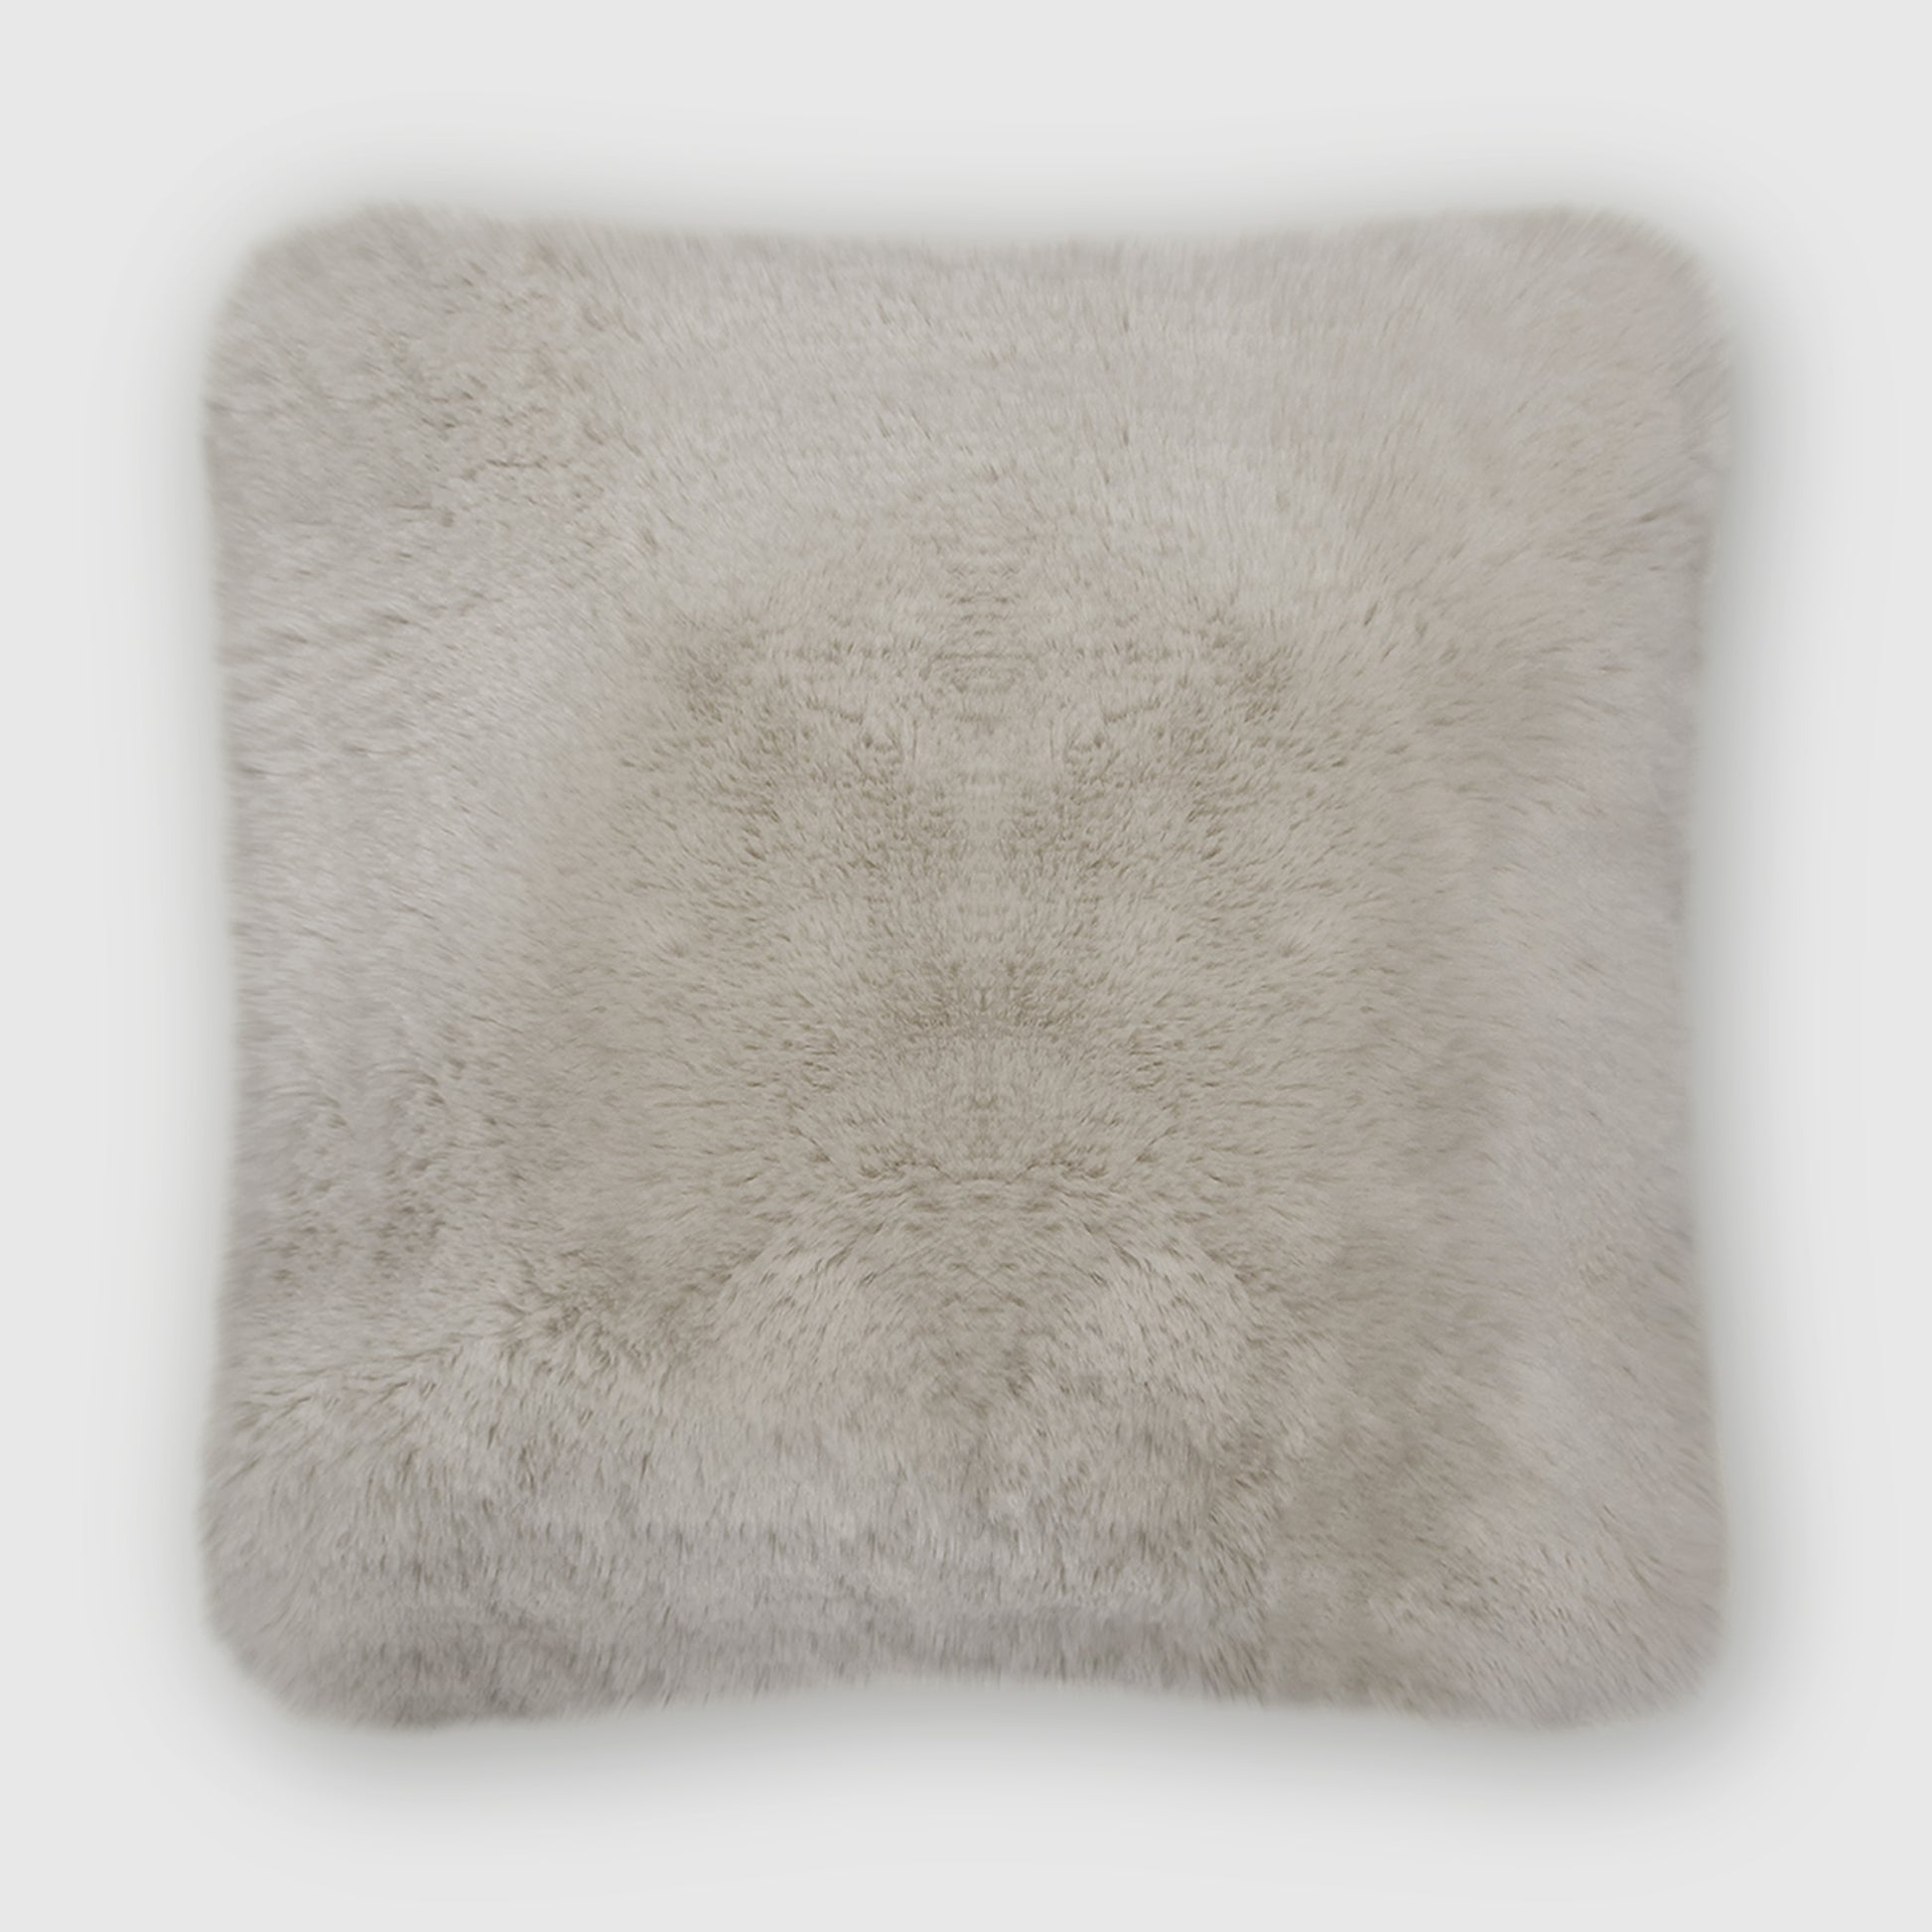 The Mood | Rex Faux Fur 24"x24" Pillow, Chateau Gray